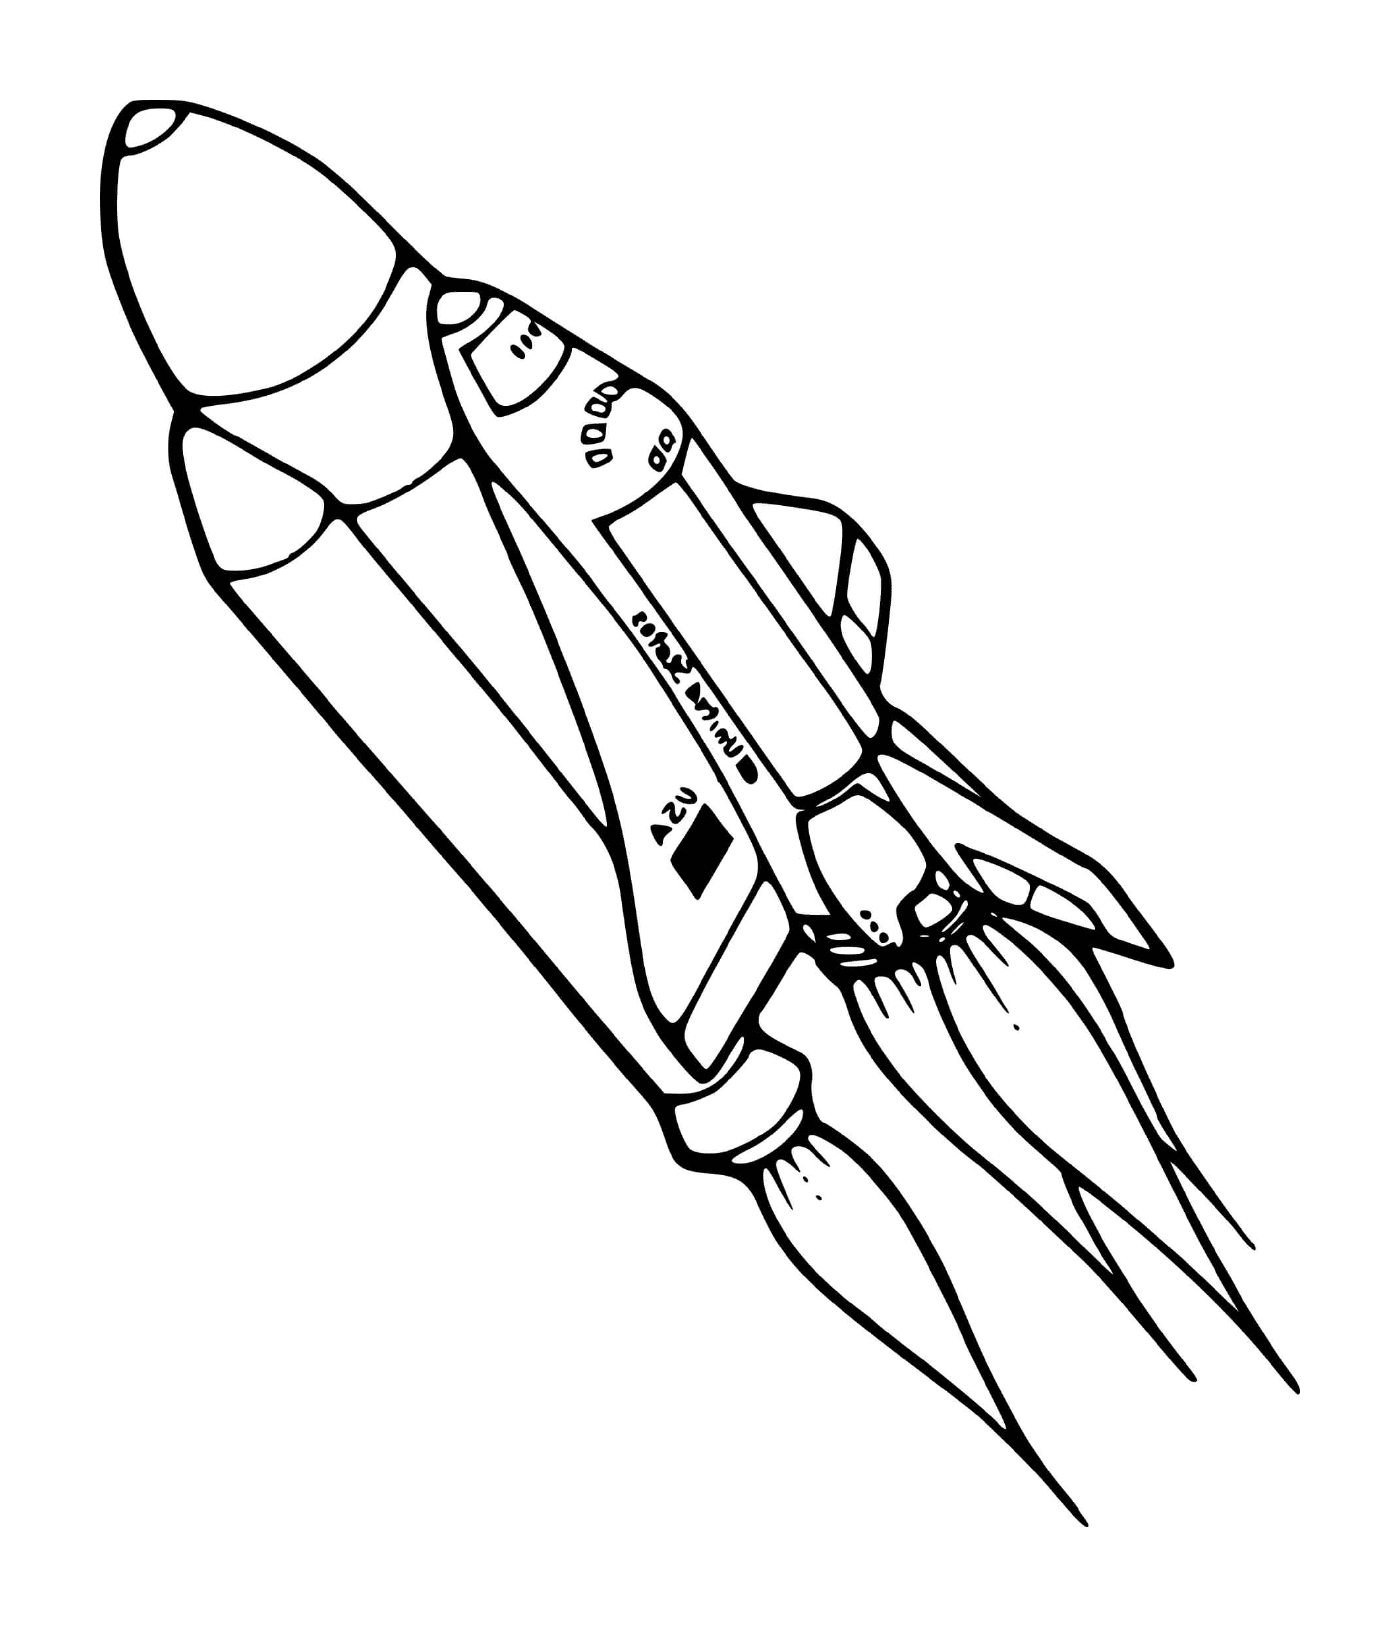  foguete espacial da NASA 